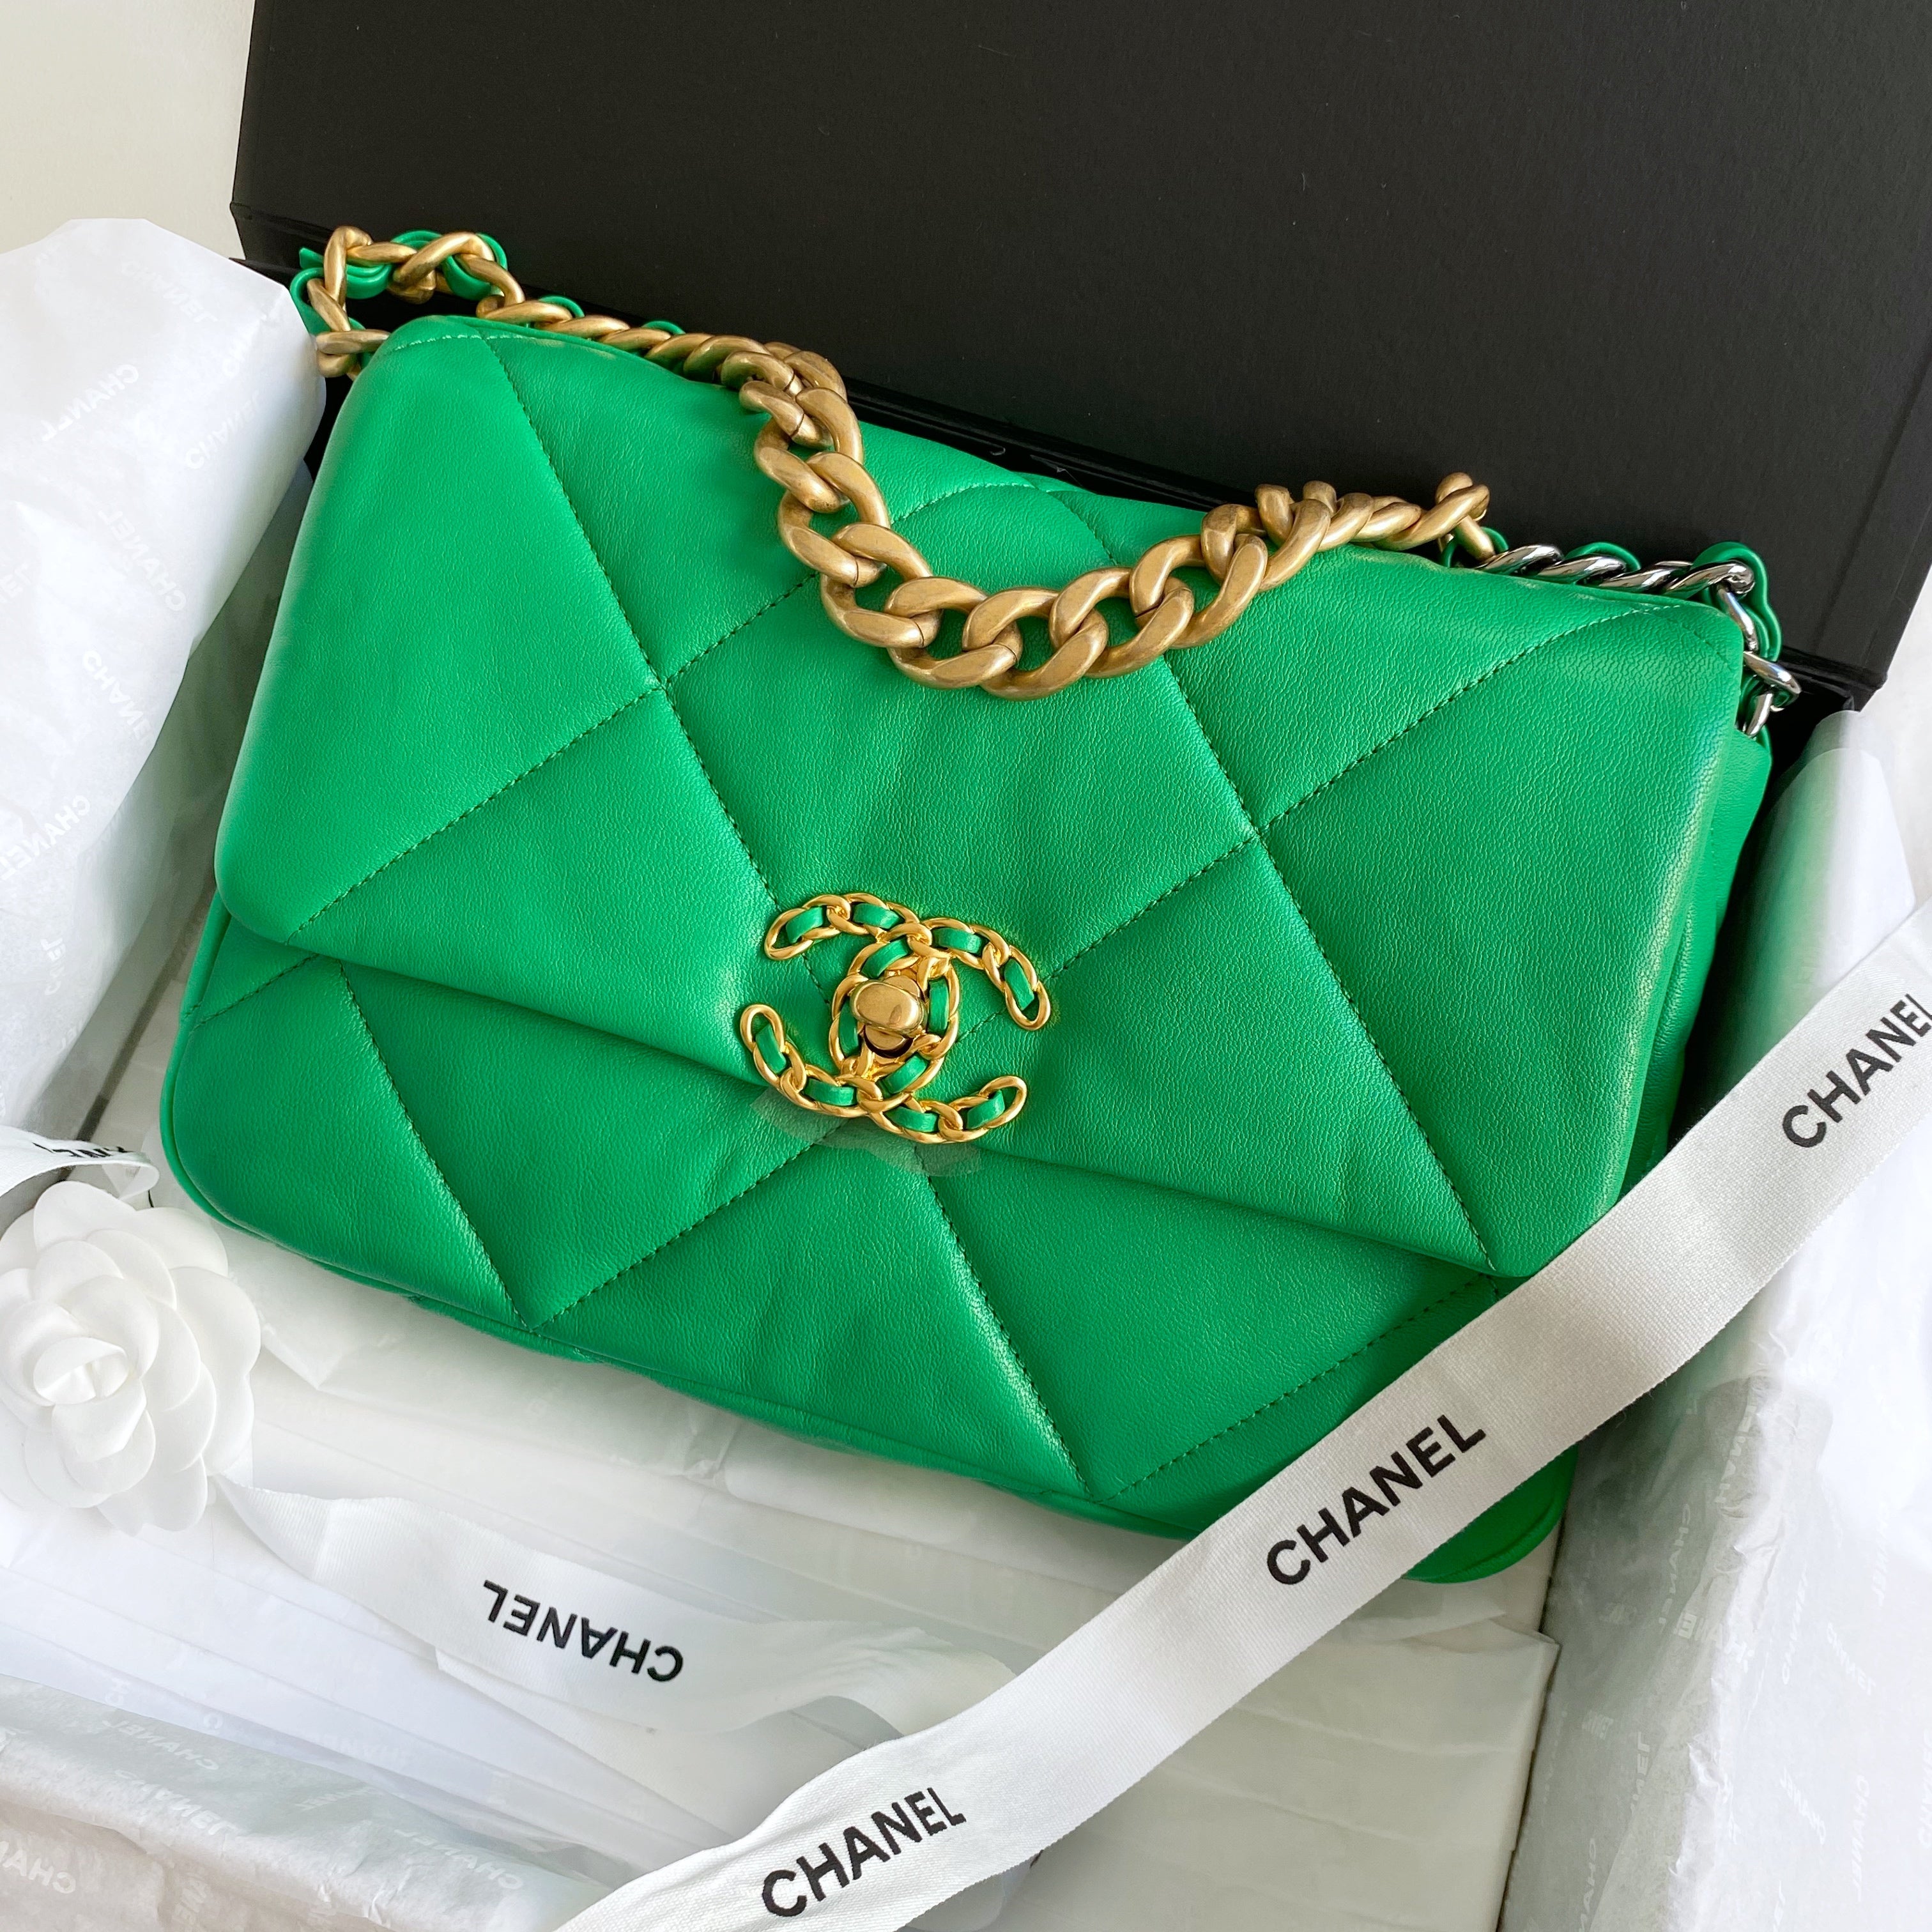 sage green chanel bag